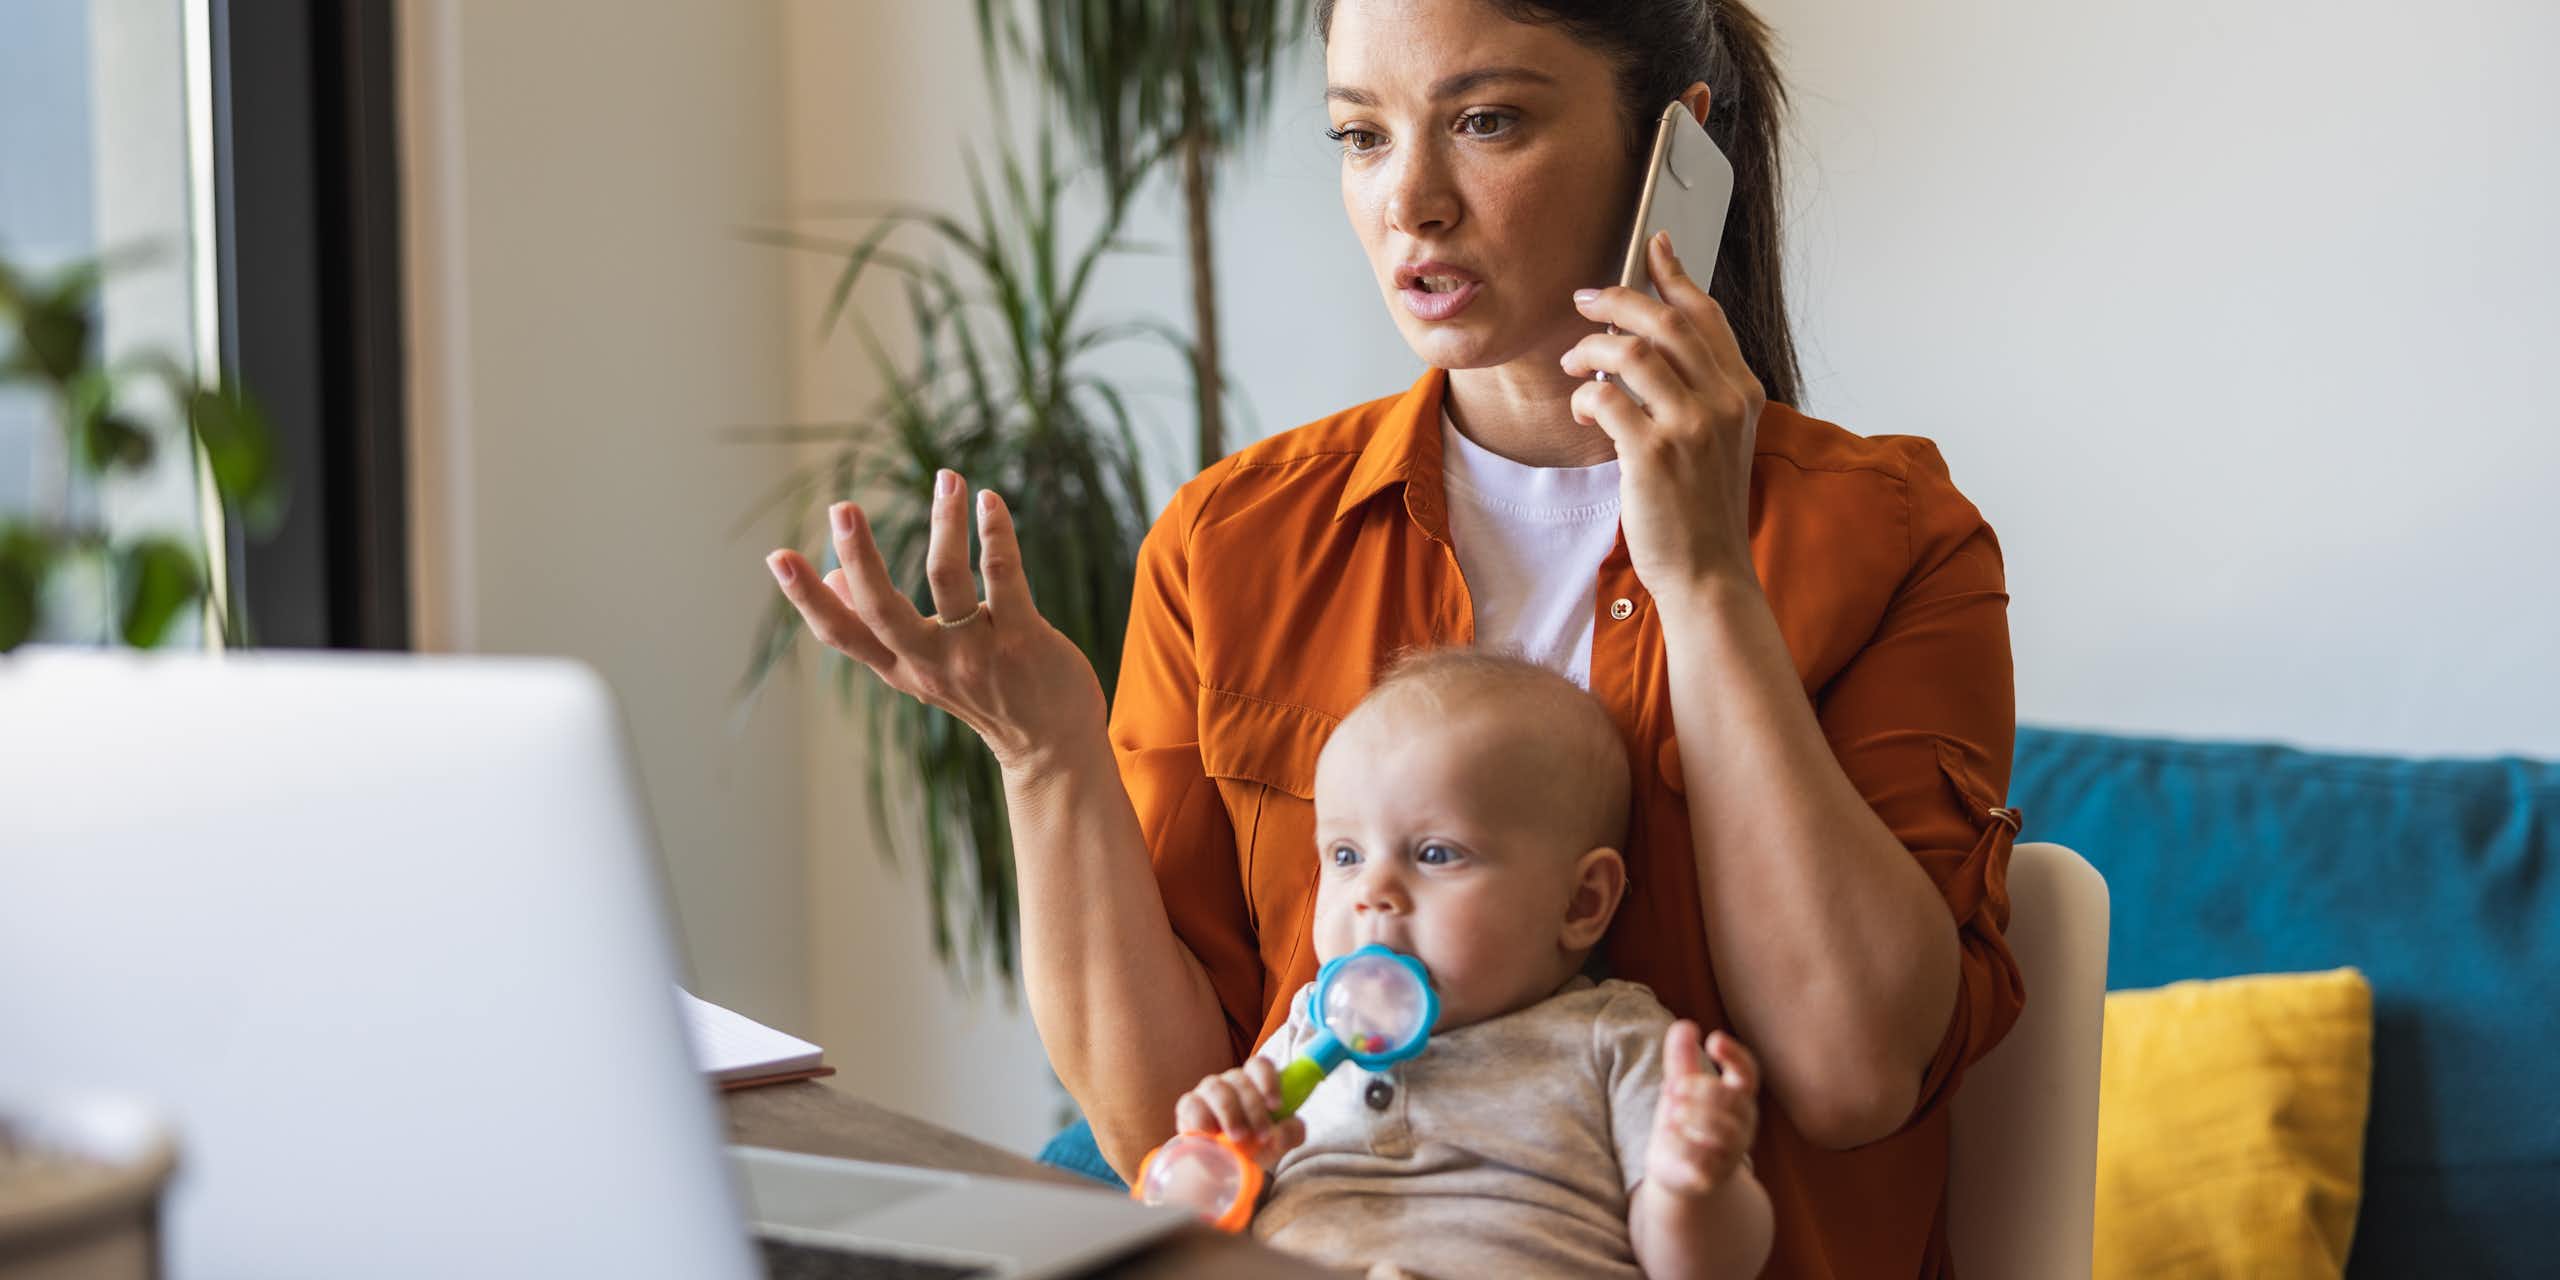 Une jeune femme parle au téléphone portable tout en regardant un ordinateur portable ouvert. Un bébé est assis sur ses genoux et mâchonne un jouet.